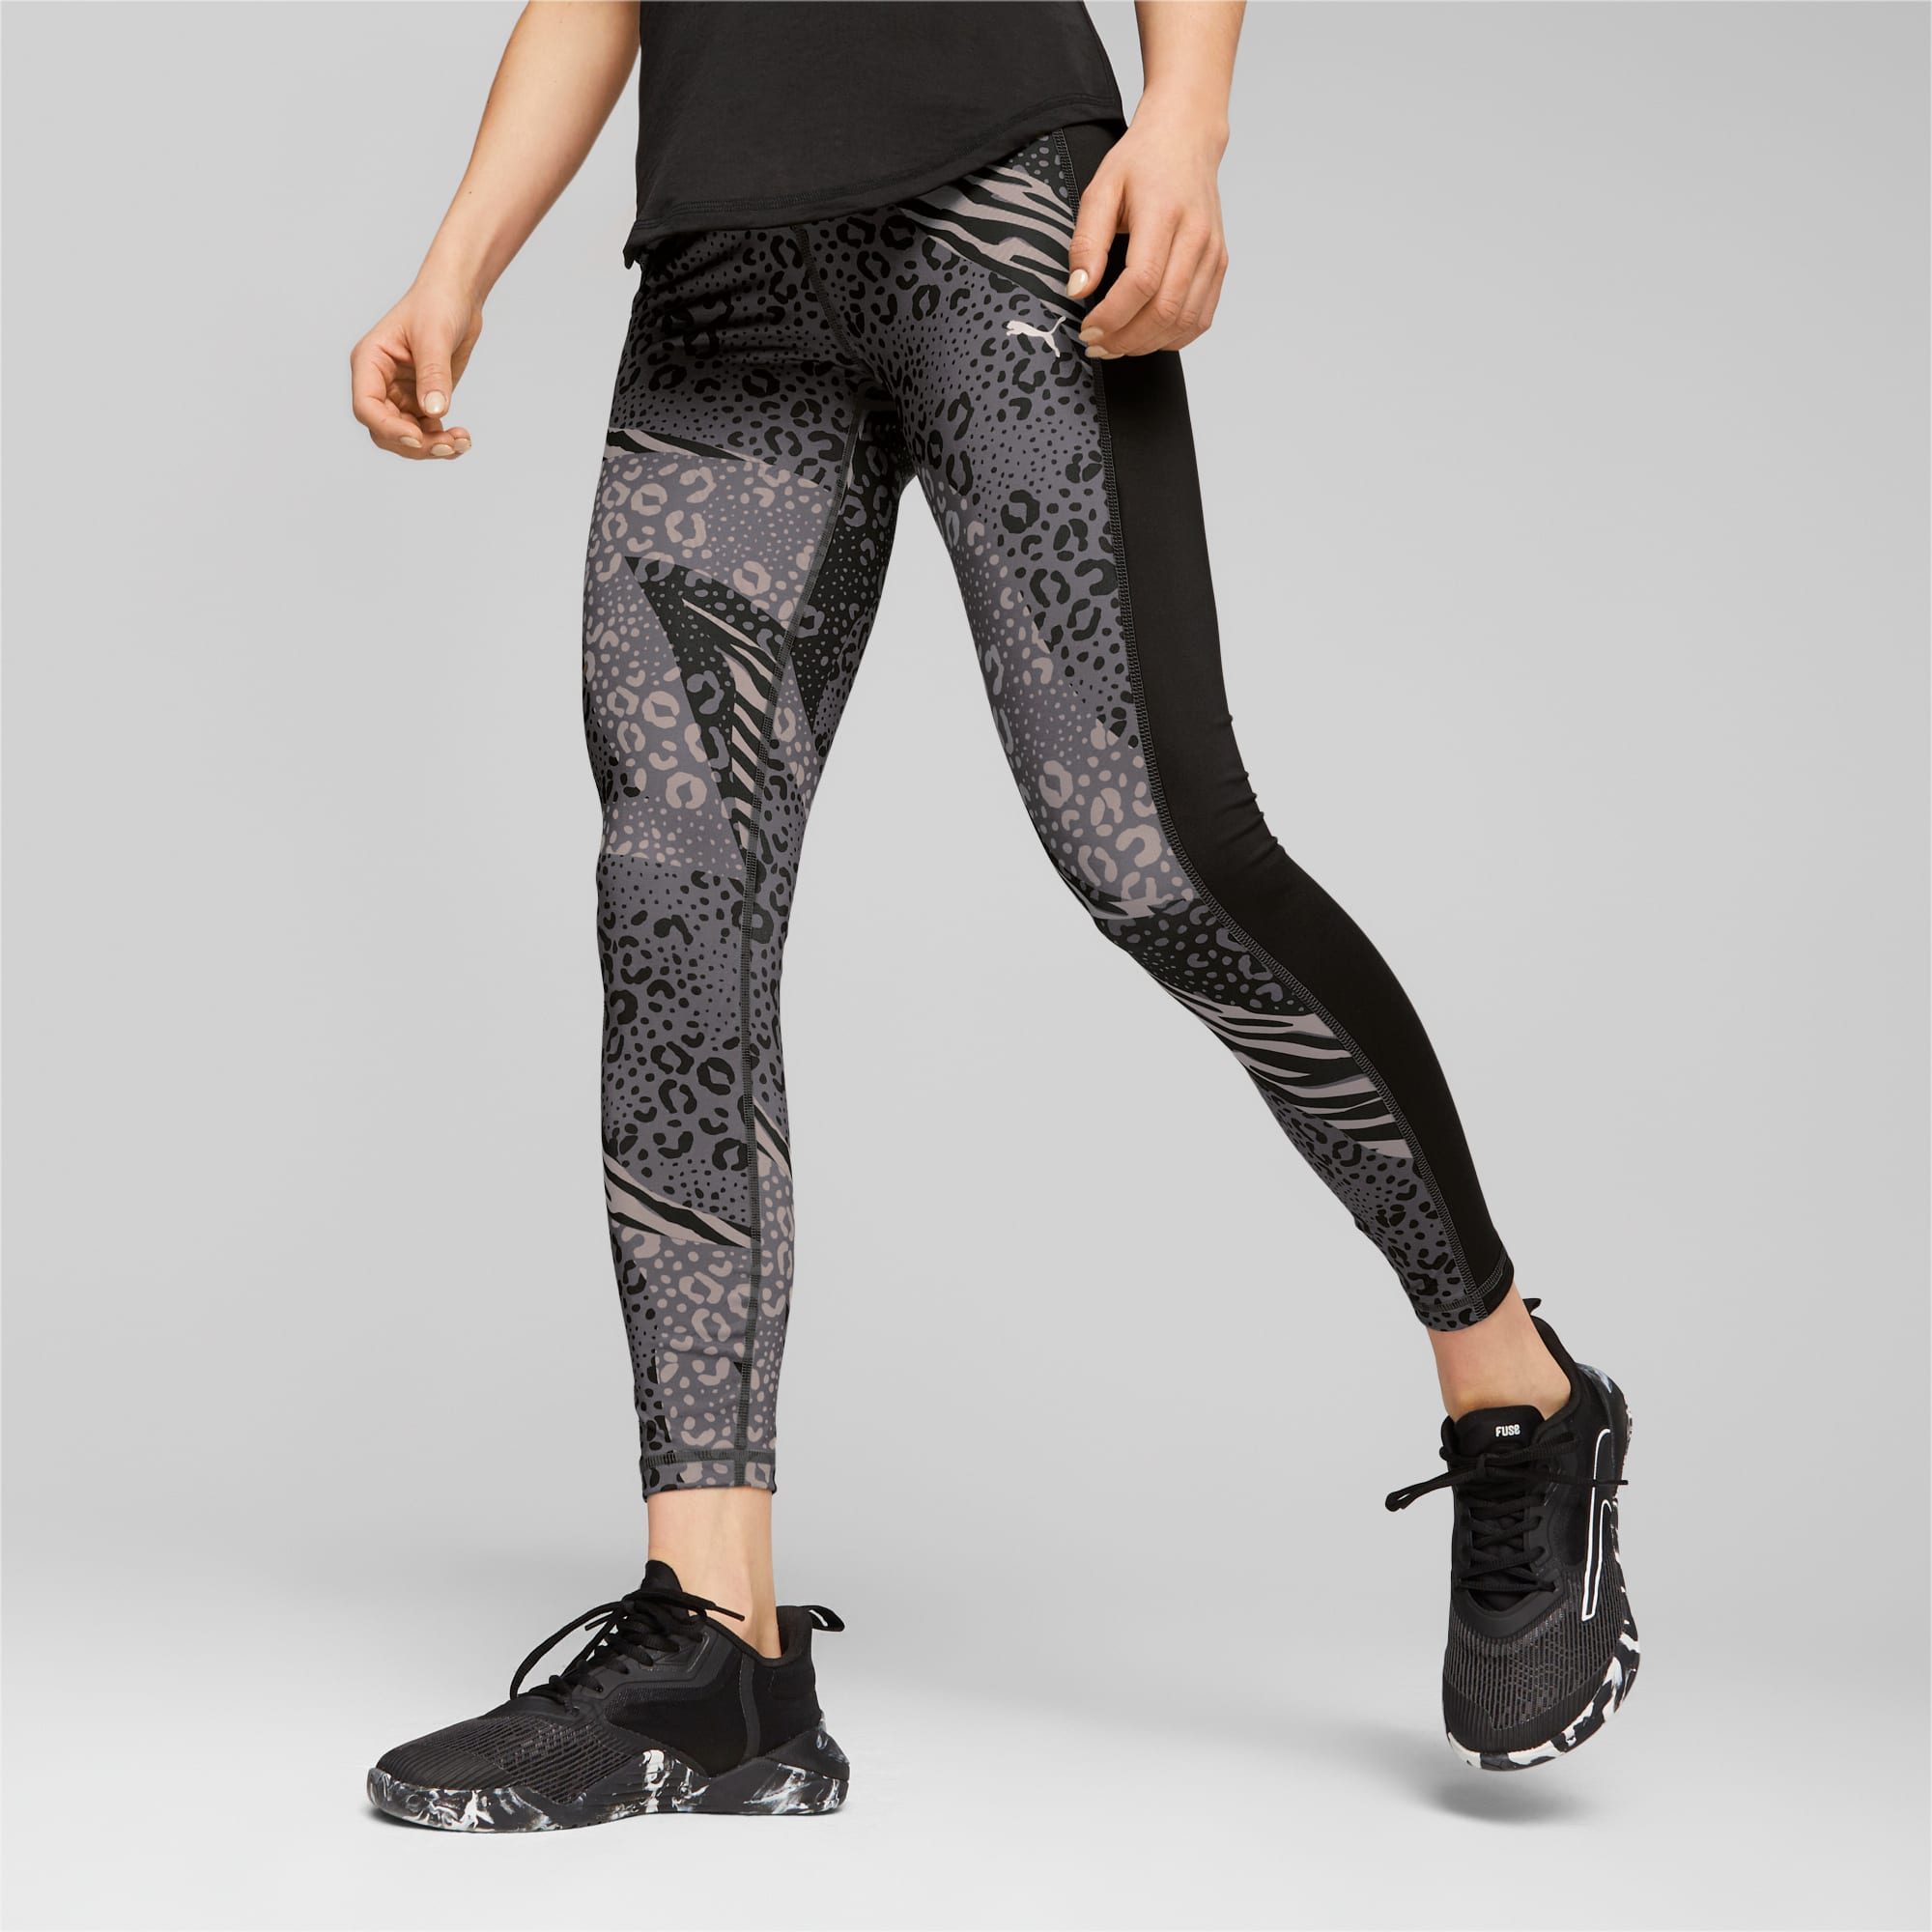 Puma X Koché Tech Tights Woman Leggings Black Size Xl Polyester